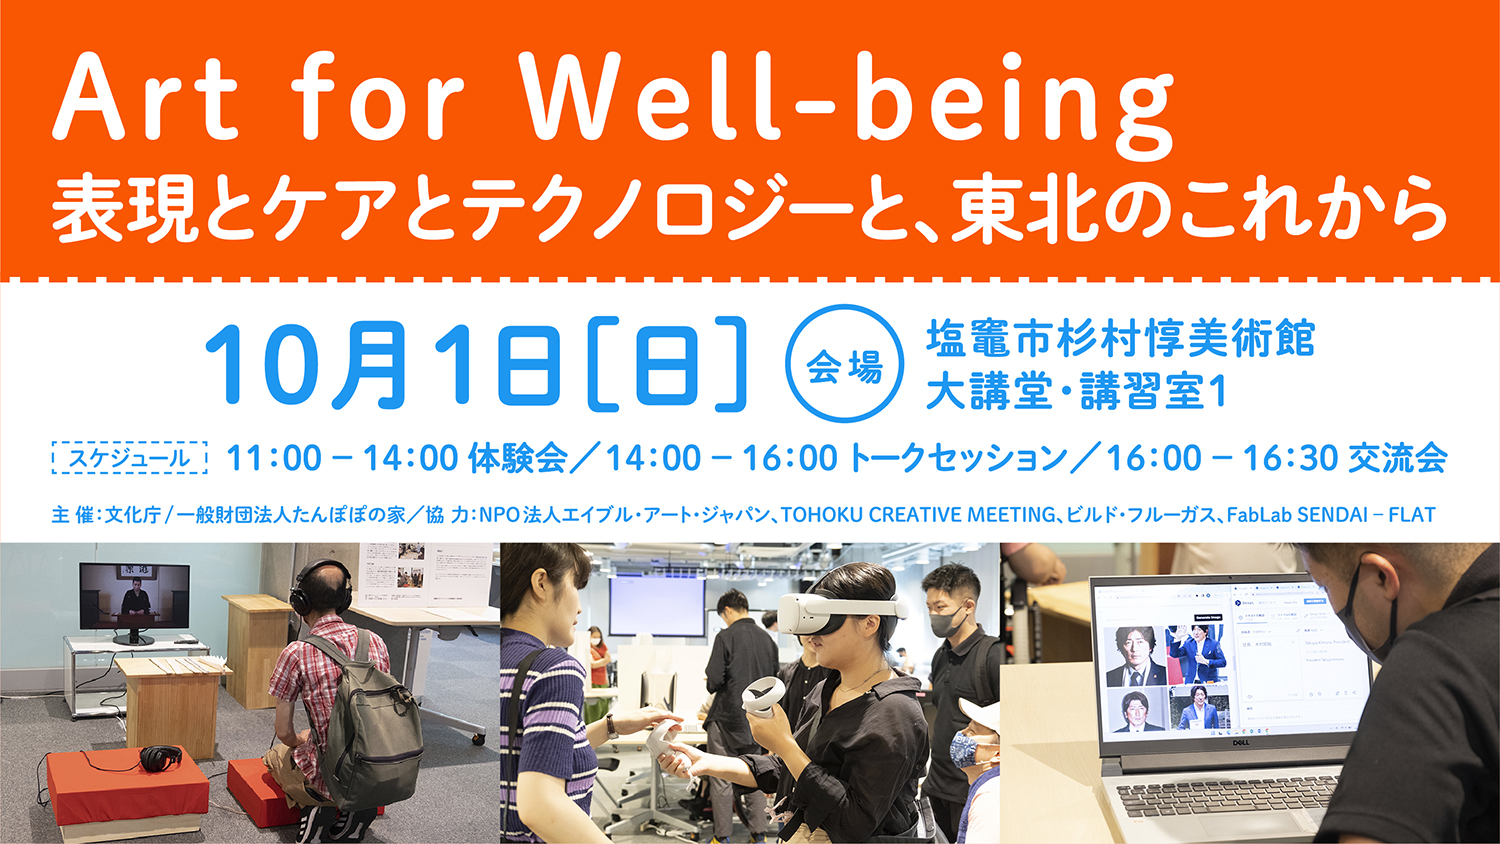 10月1日開催「Art for Well-being 表現とケアとテクノロジーと、東北のこれから」